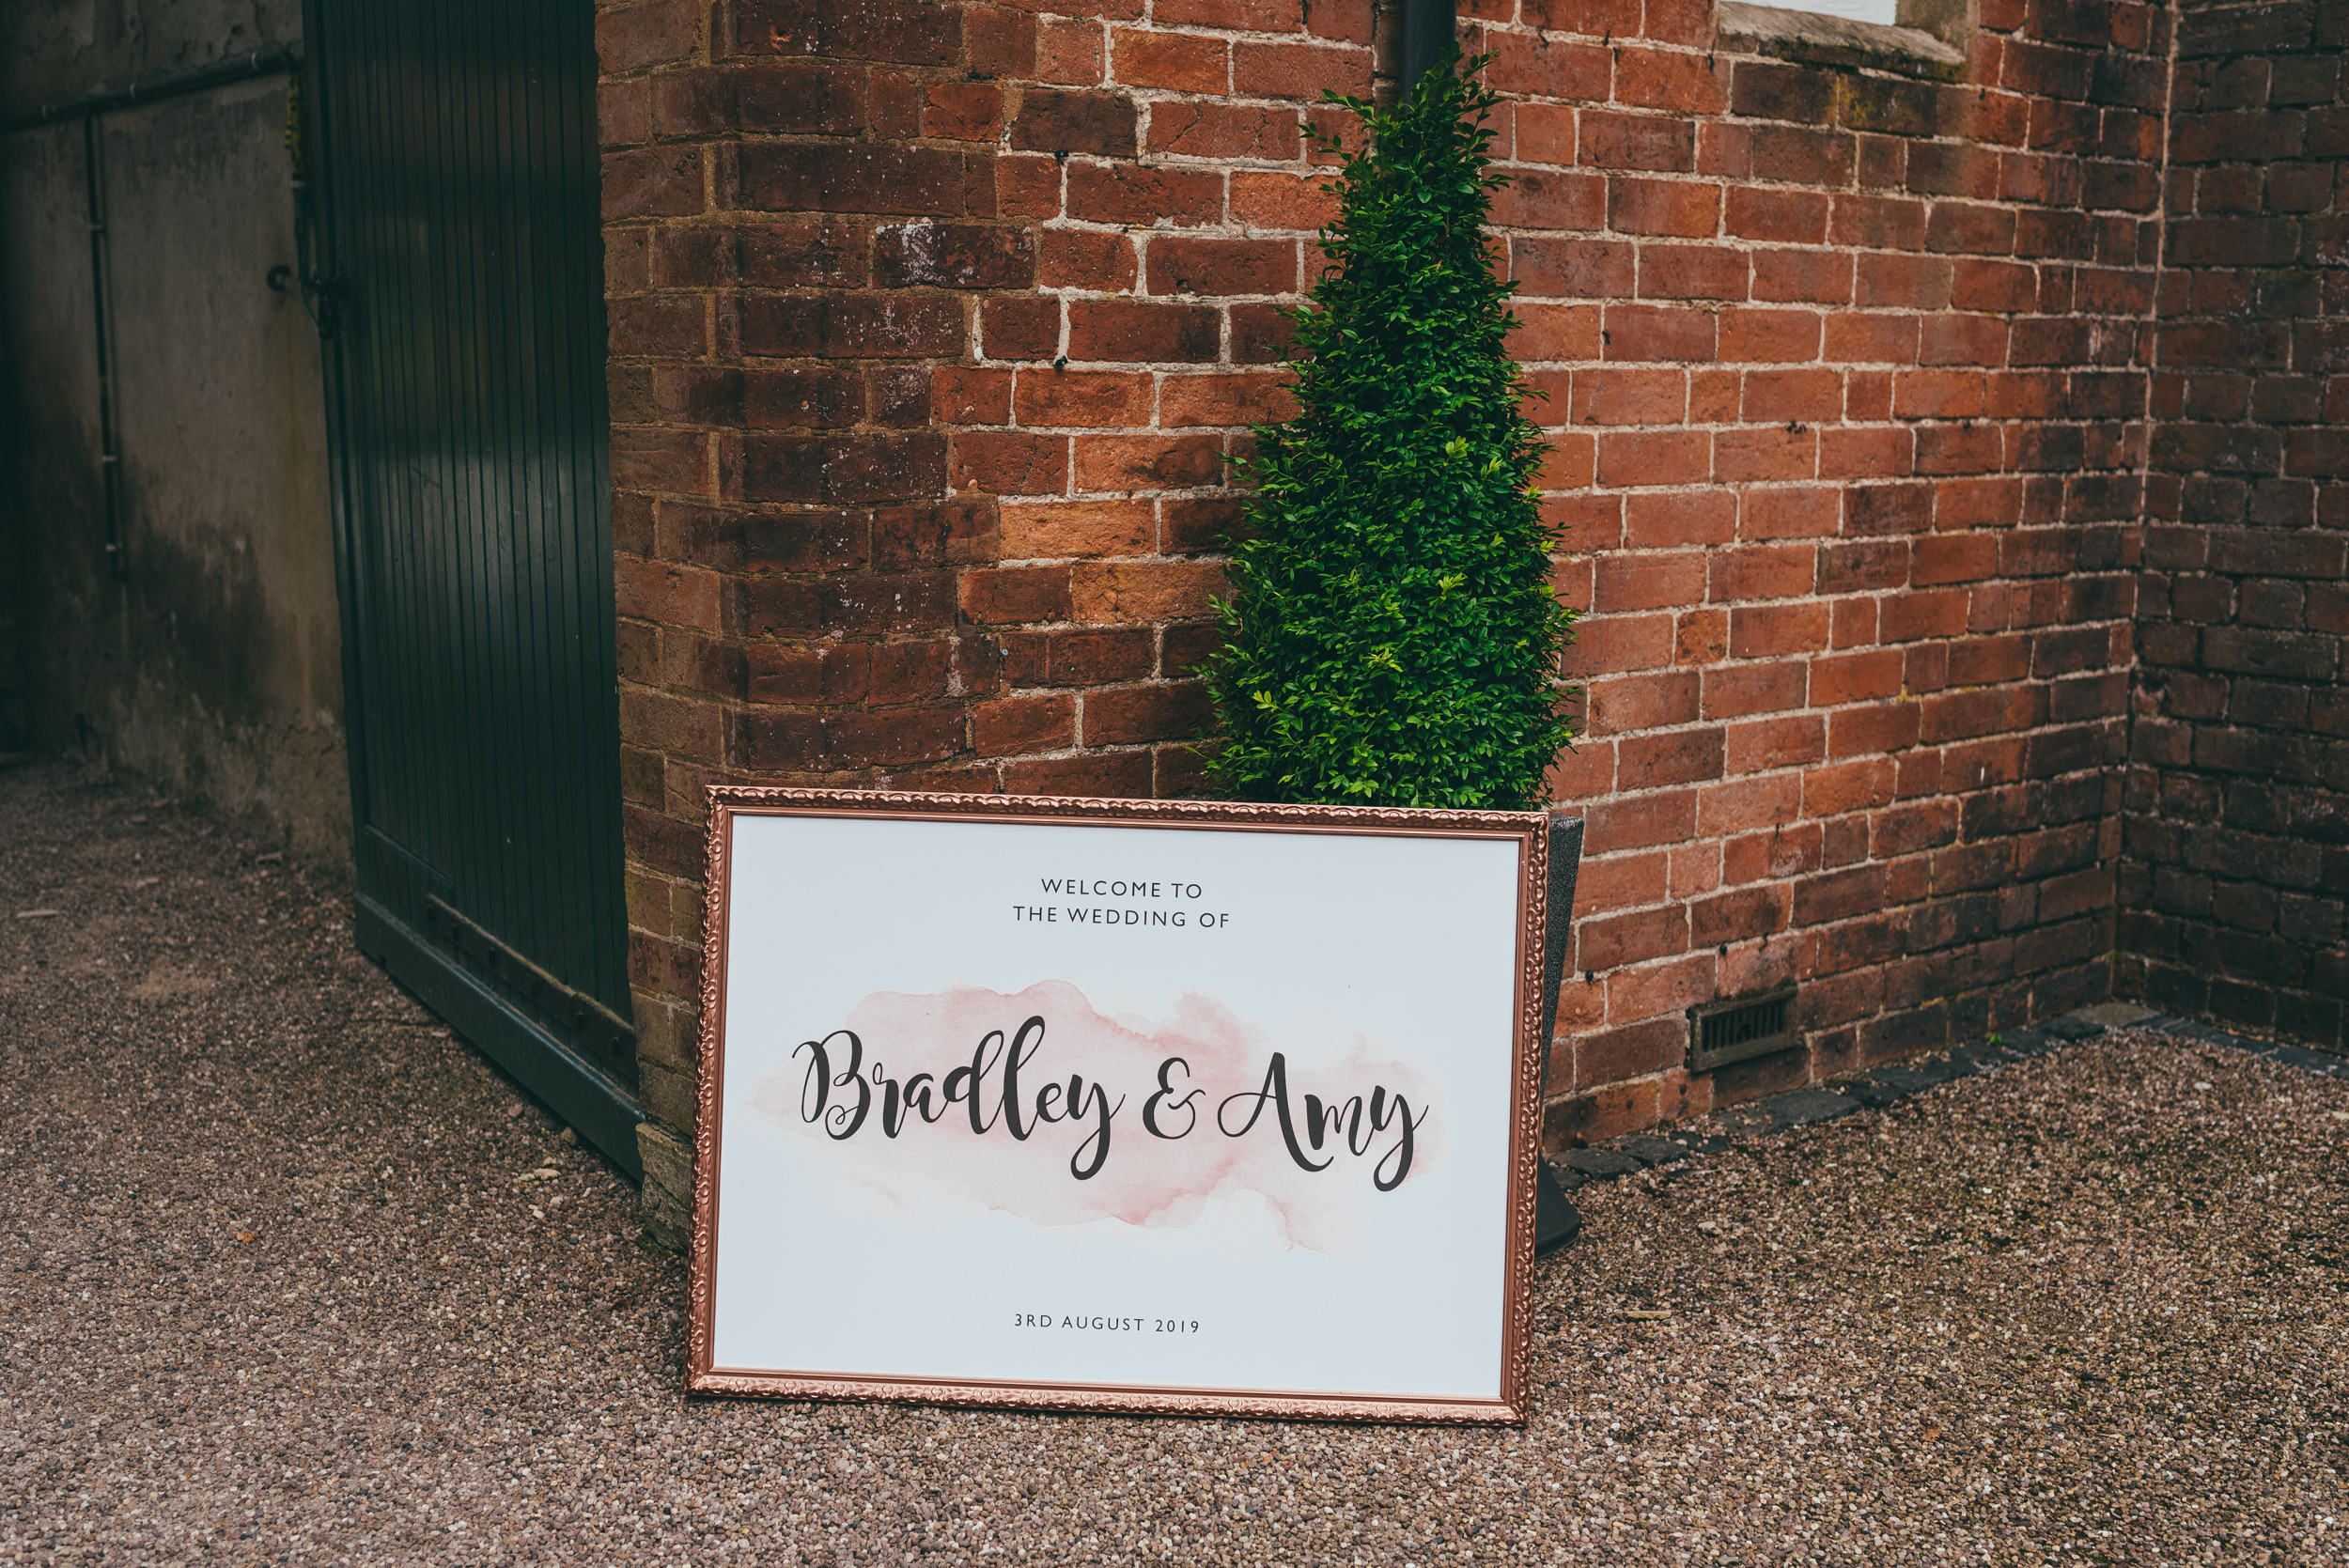 wedding day sign at yeldersley hall wedding